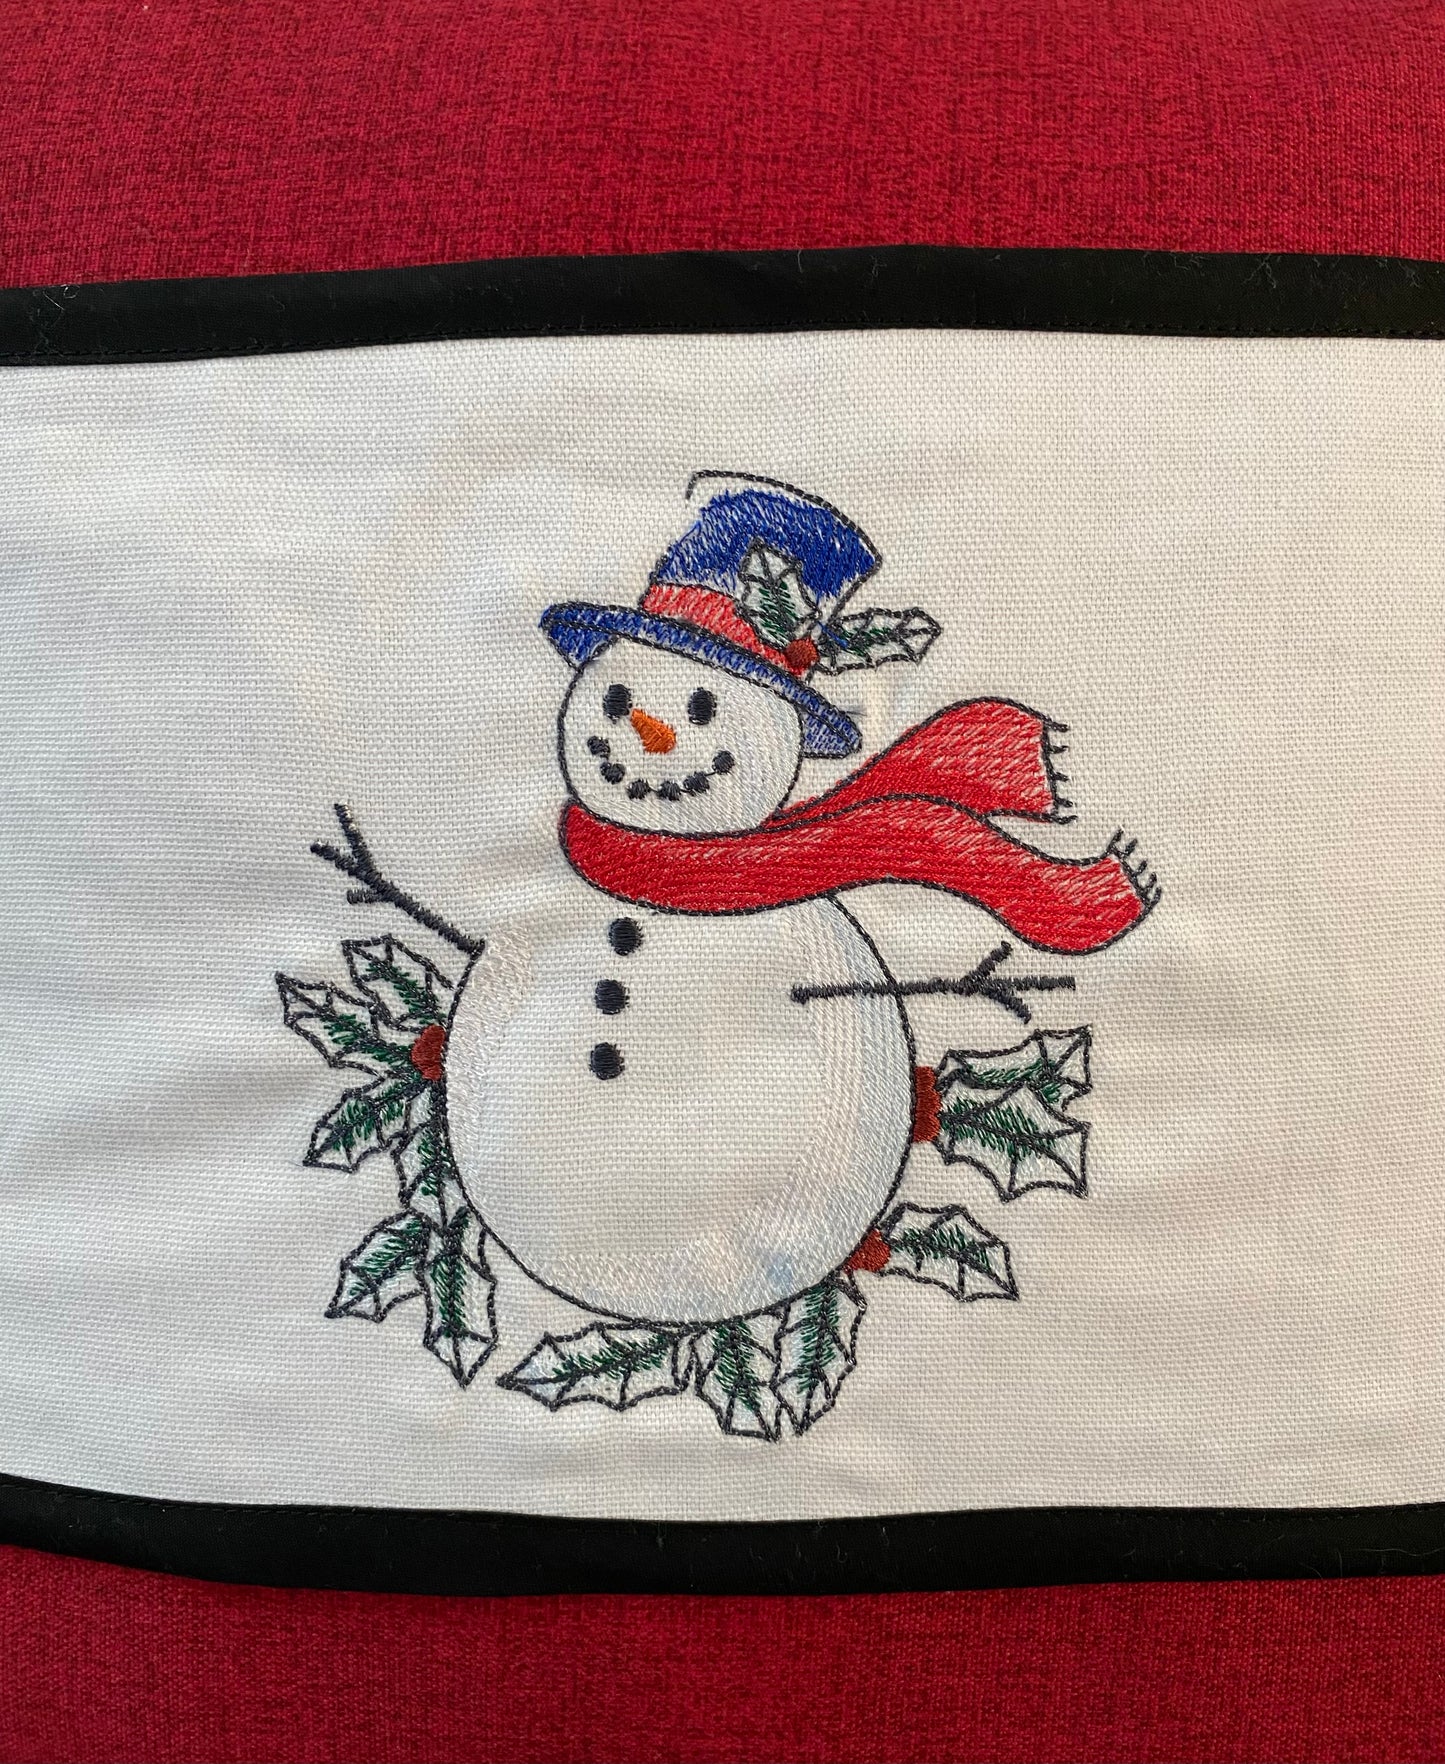 Snowman Pillow Wrap